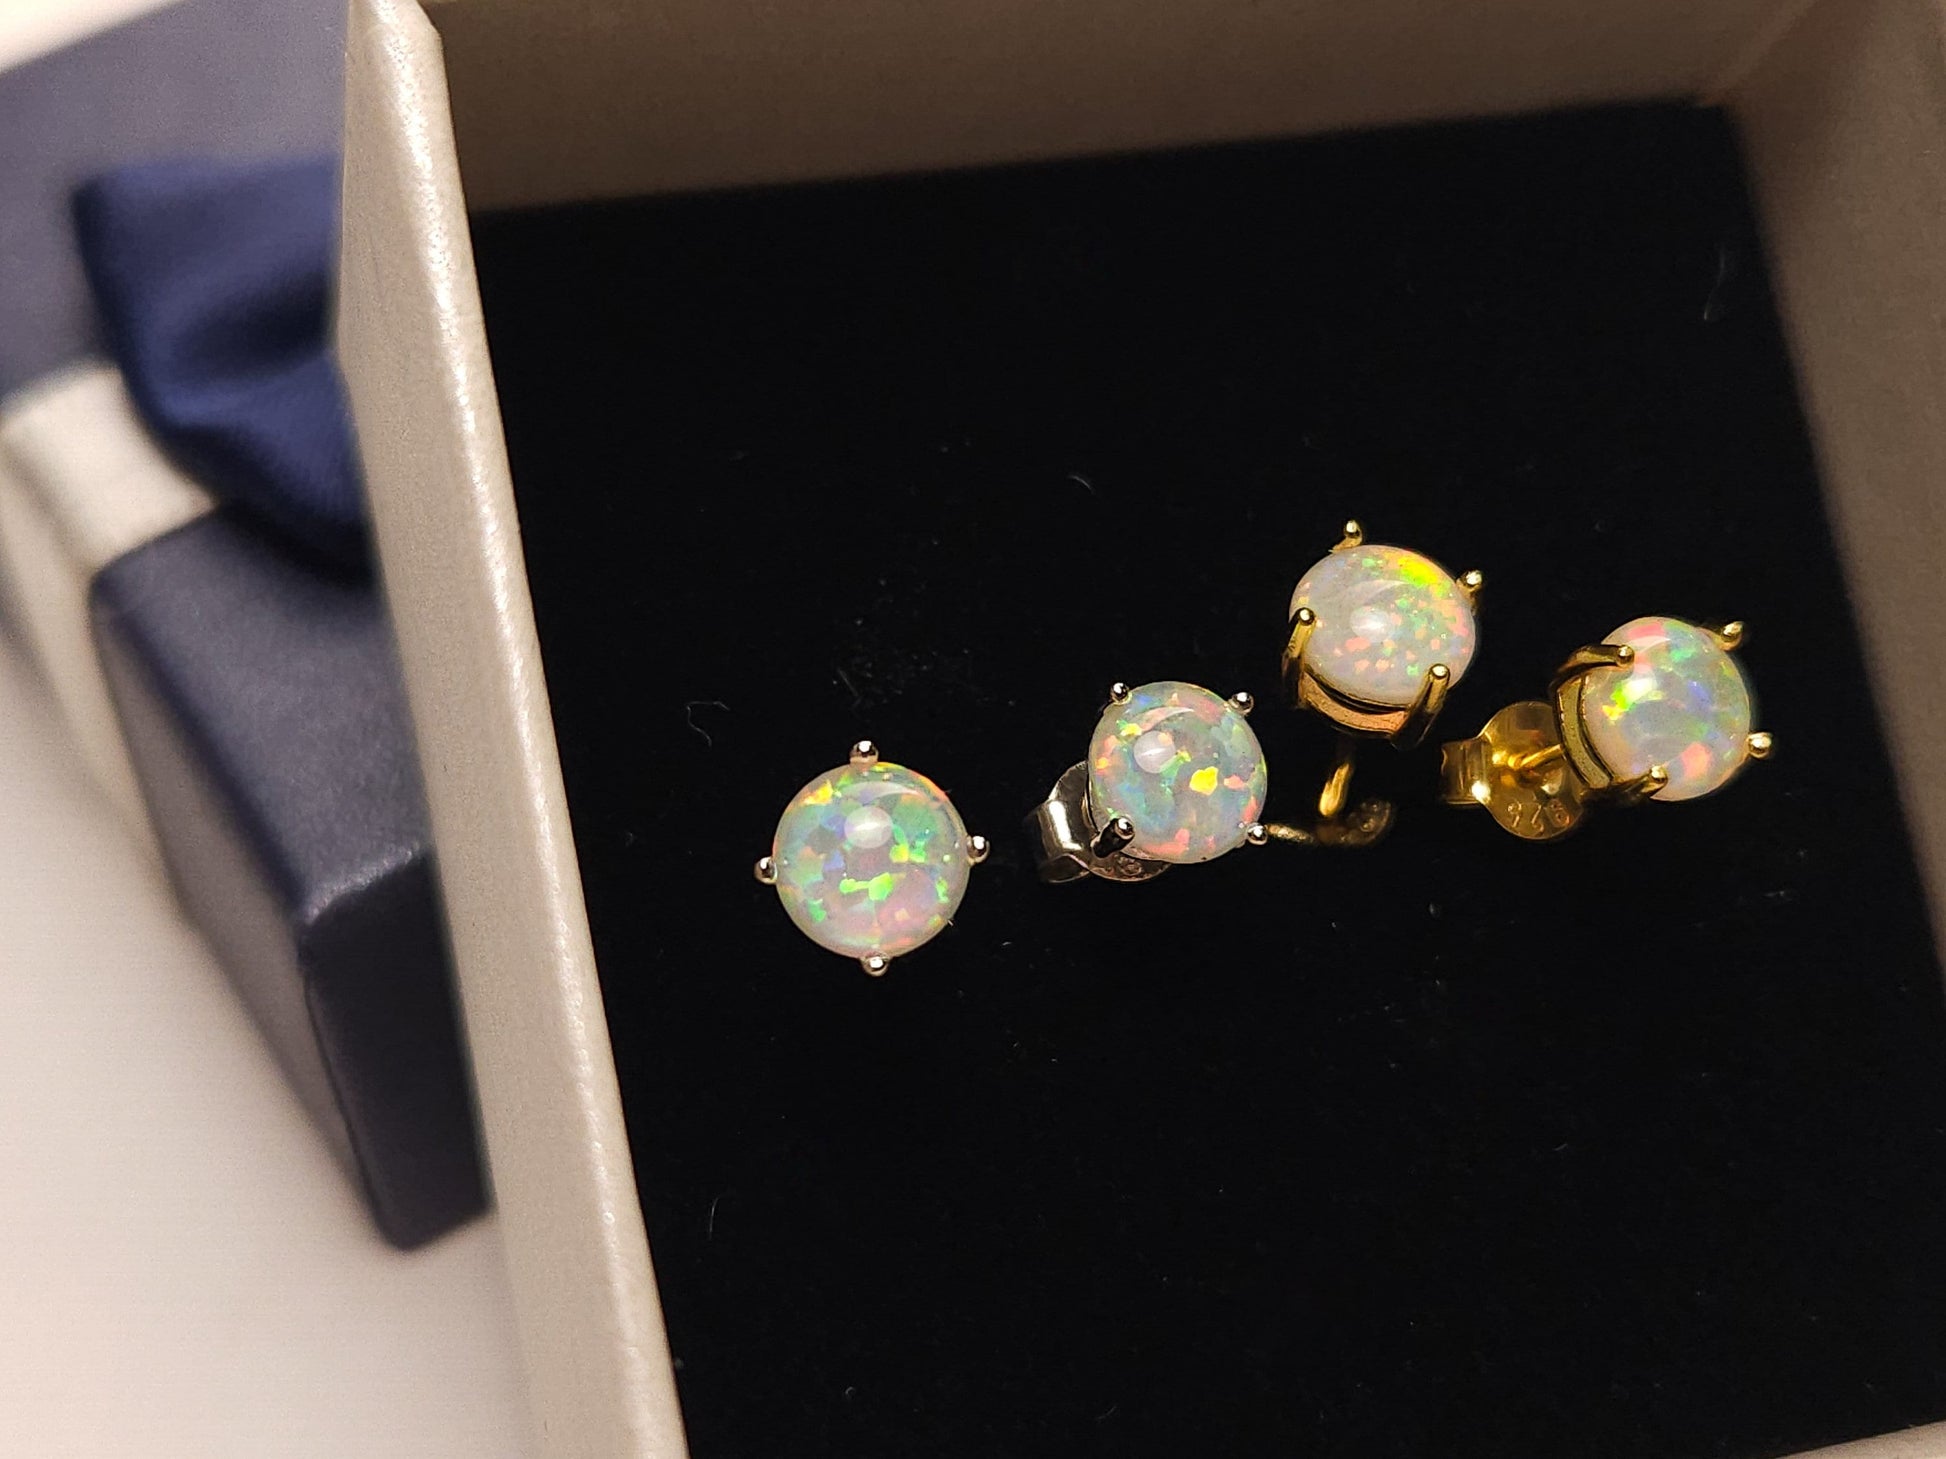 Genuine Ethiopian Fire Opal, Welo Opal, 6mm Stud Earrings in 925 Sterling Silver, AAA Quality Fiery Welo Opal Dainty Elegant Earrings, Gift